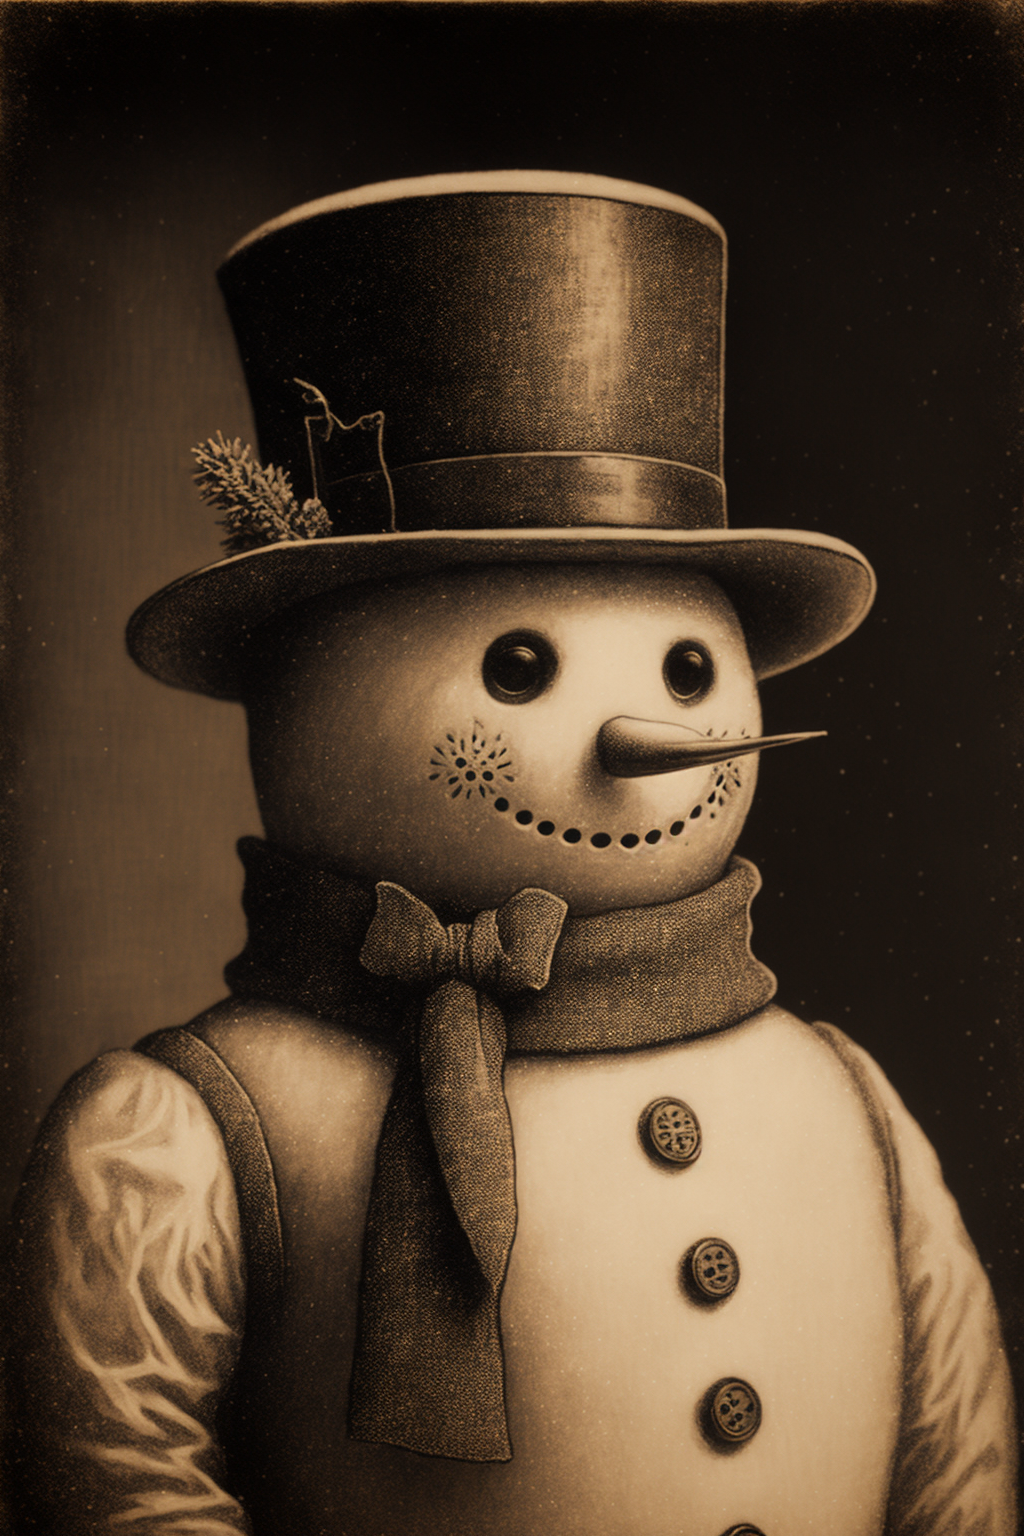 danhowl_classic_snowman_portait_vintage_copper-plate_engraving__c0520d68-6bd9-4509-b551-2cfbb01b7436